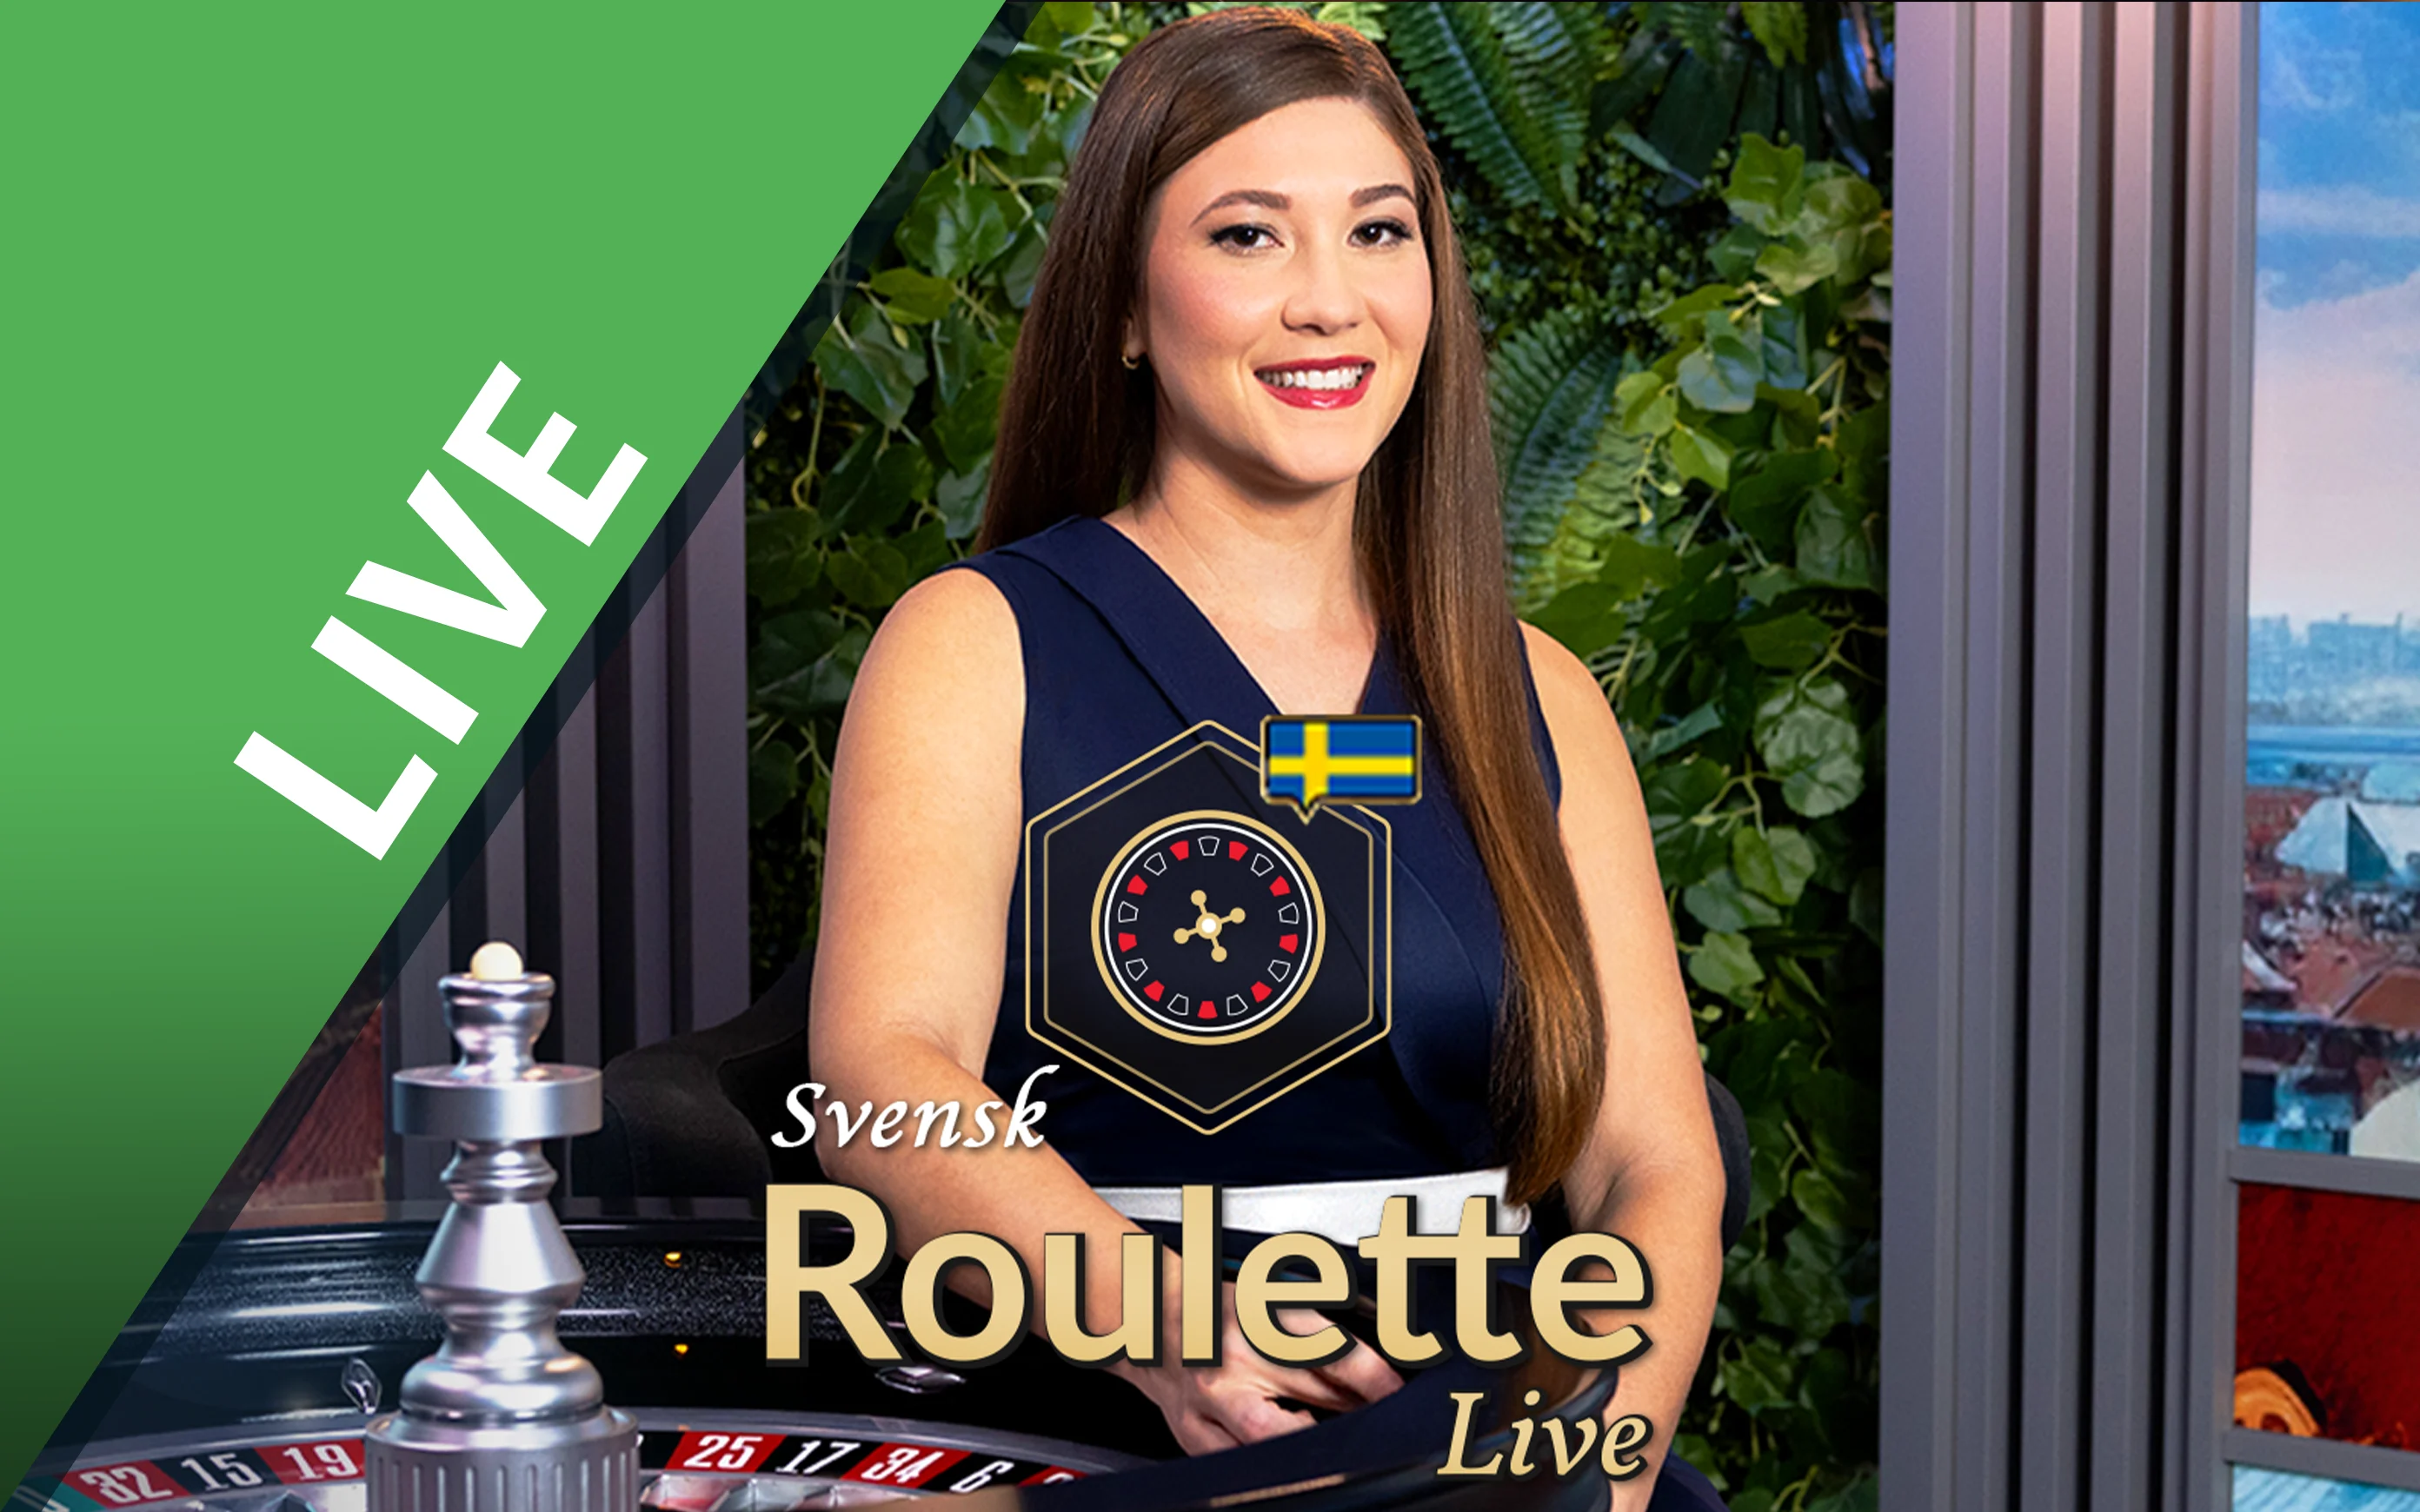 Starcasino.be online casino üzerinden Swedish Roulette oynayın